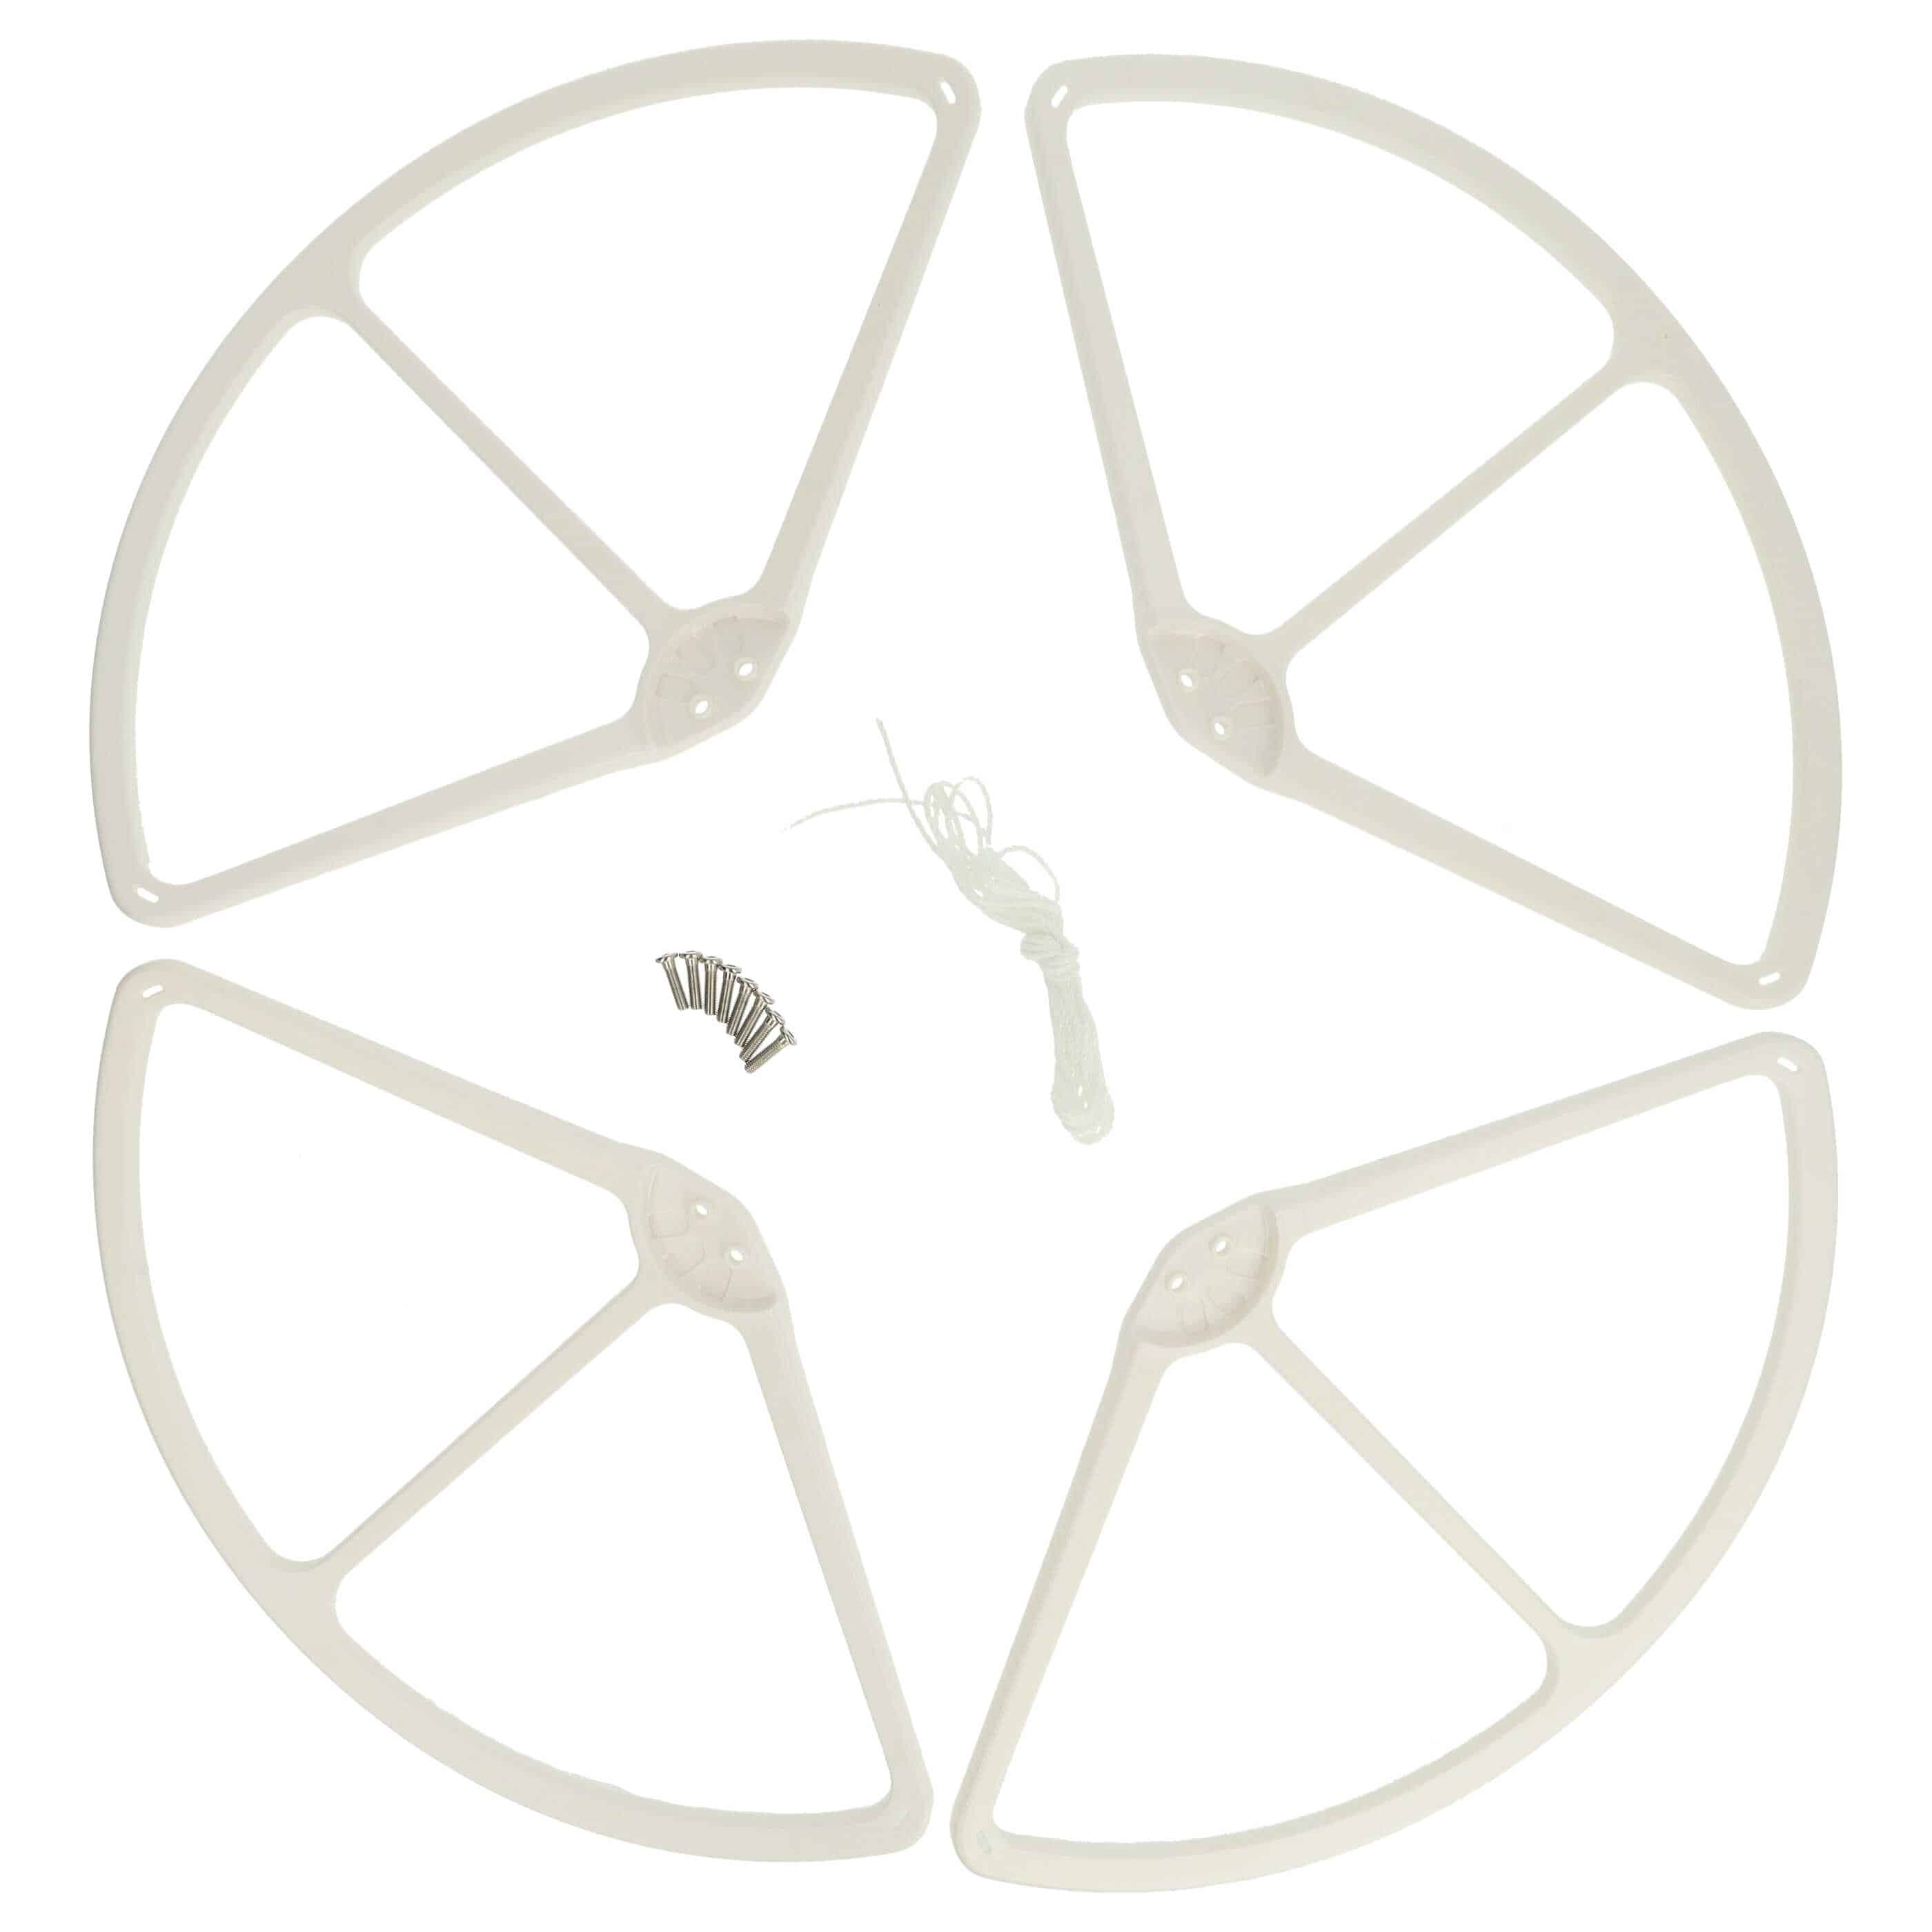 4x Propellerschutz für DJI Phantom Drohne u.a. - weiß